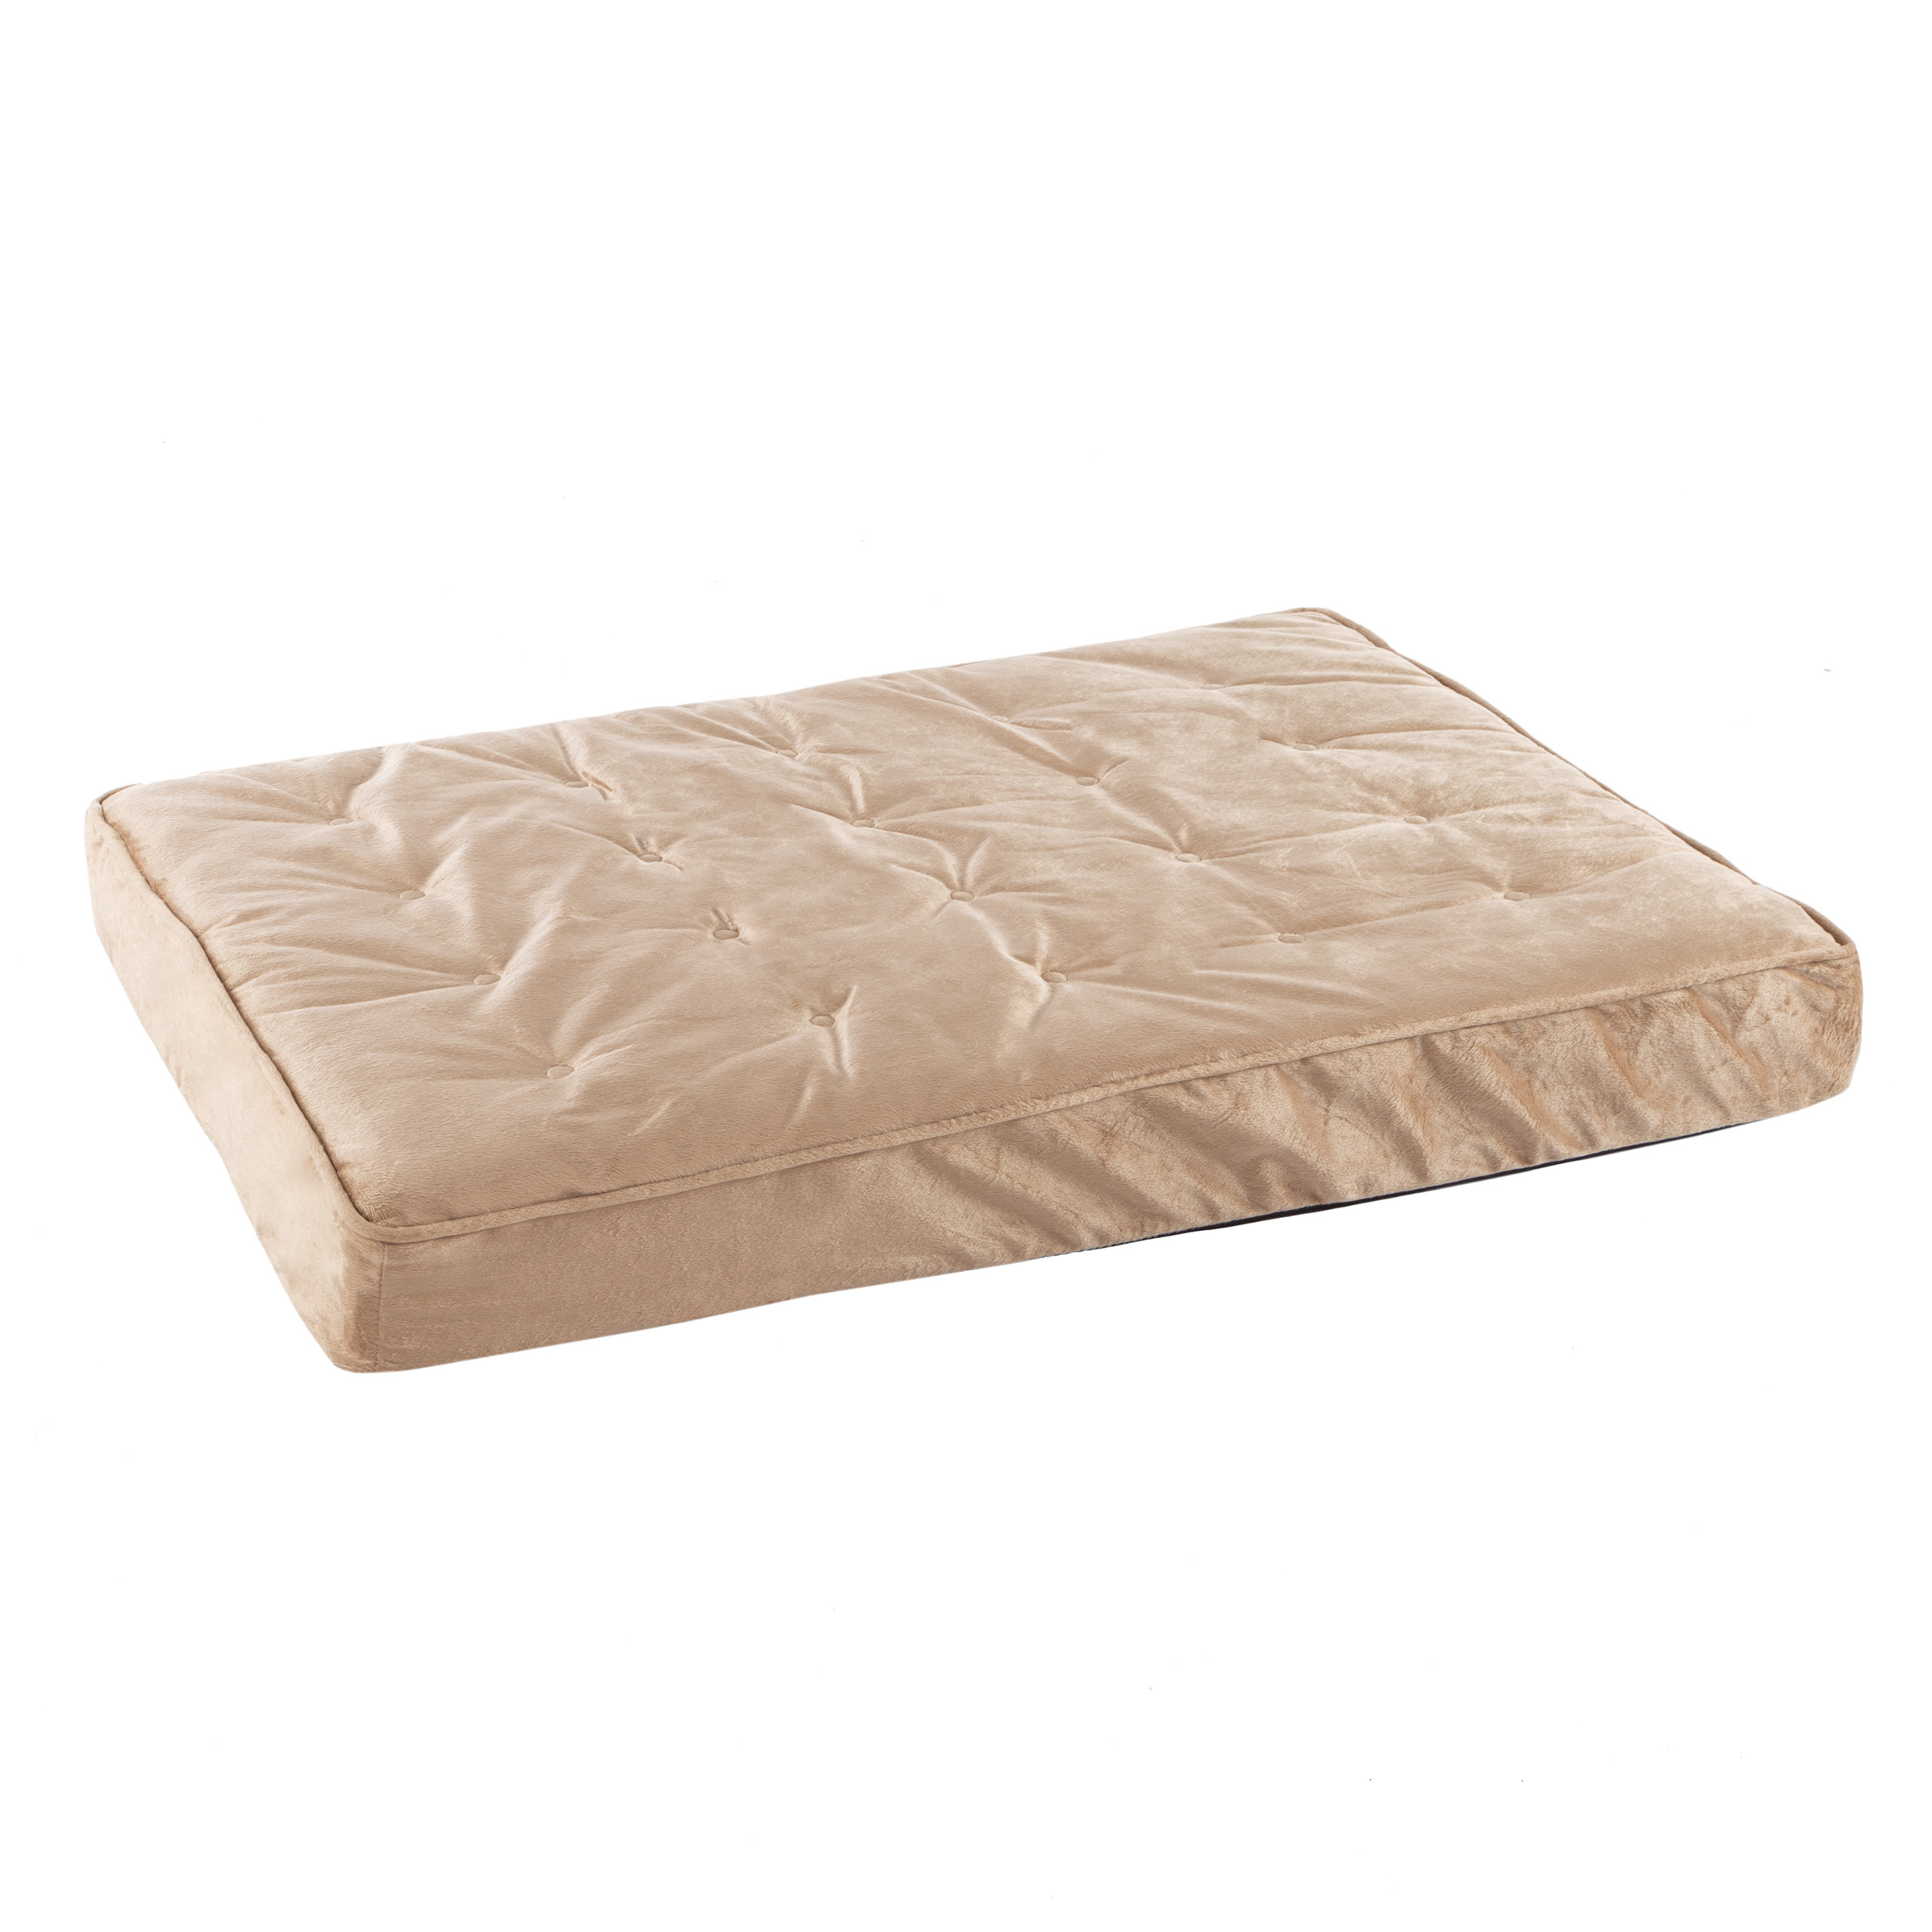 Pet Bed â Egg Crate 100% Memory Foam Orthopedic Cushion With Quilted Water-Resistant Nonslip, Machine Washable Cover - 37 X 24 Inches